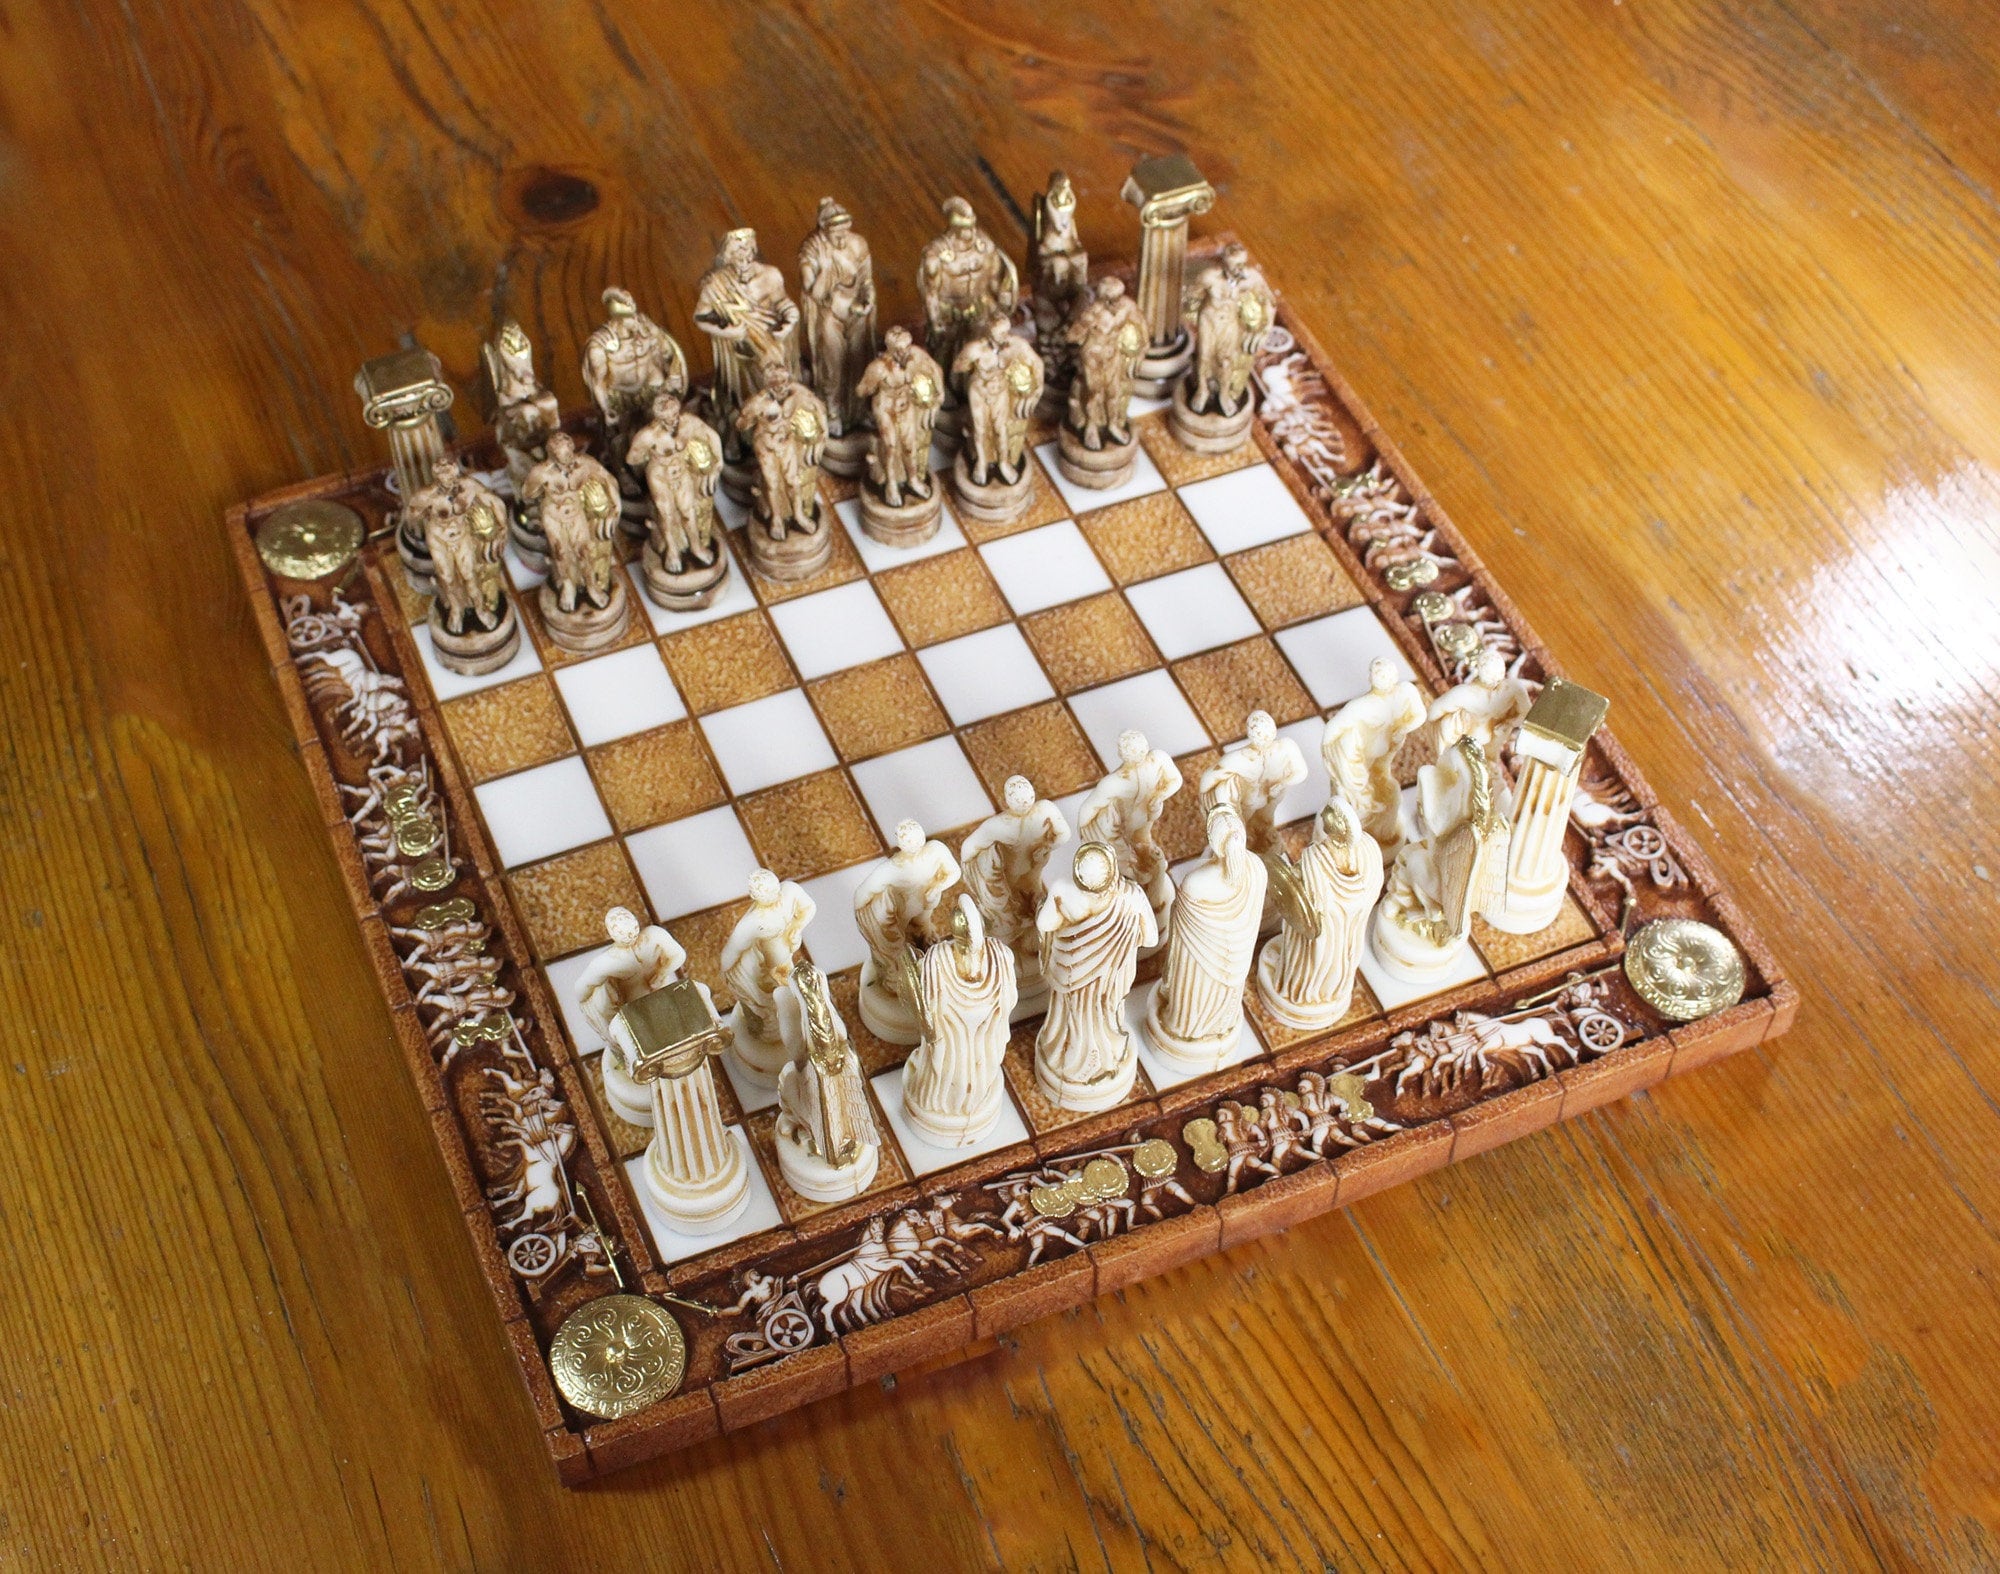 Schach mit griechischen Figuren. | Jetzt online bestellen bei Rhenania